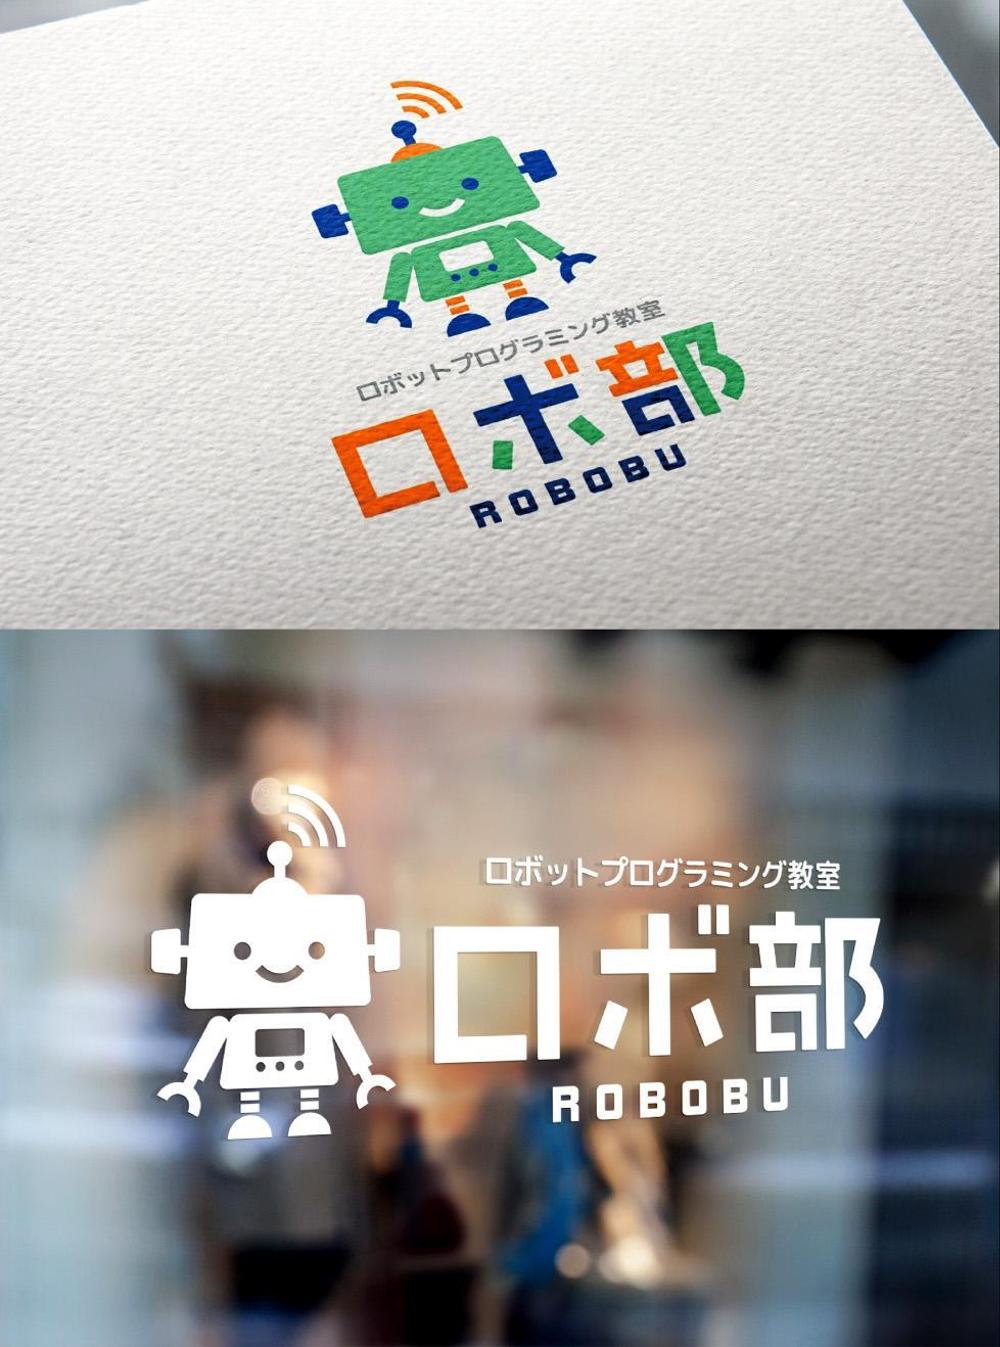 ロボットプログラミング教室のロボコンコース「ロボ部」のロゴ